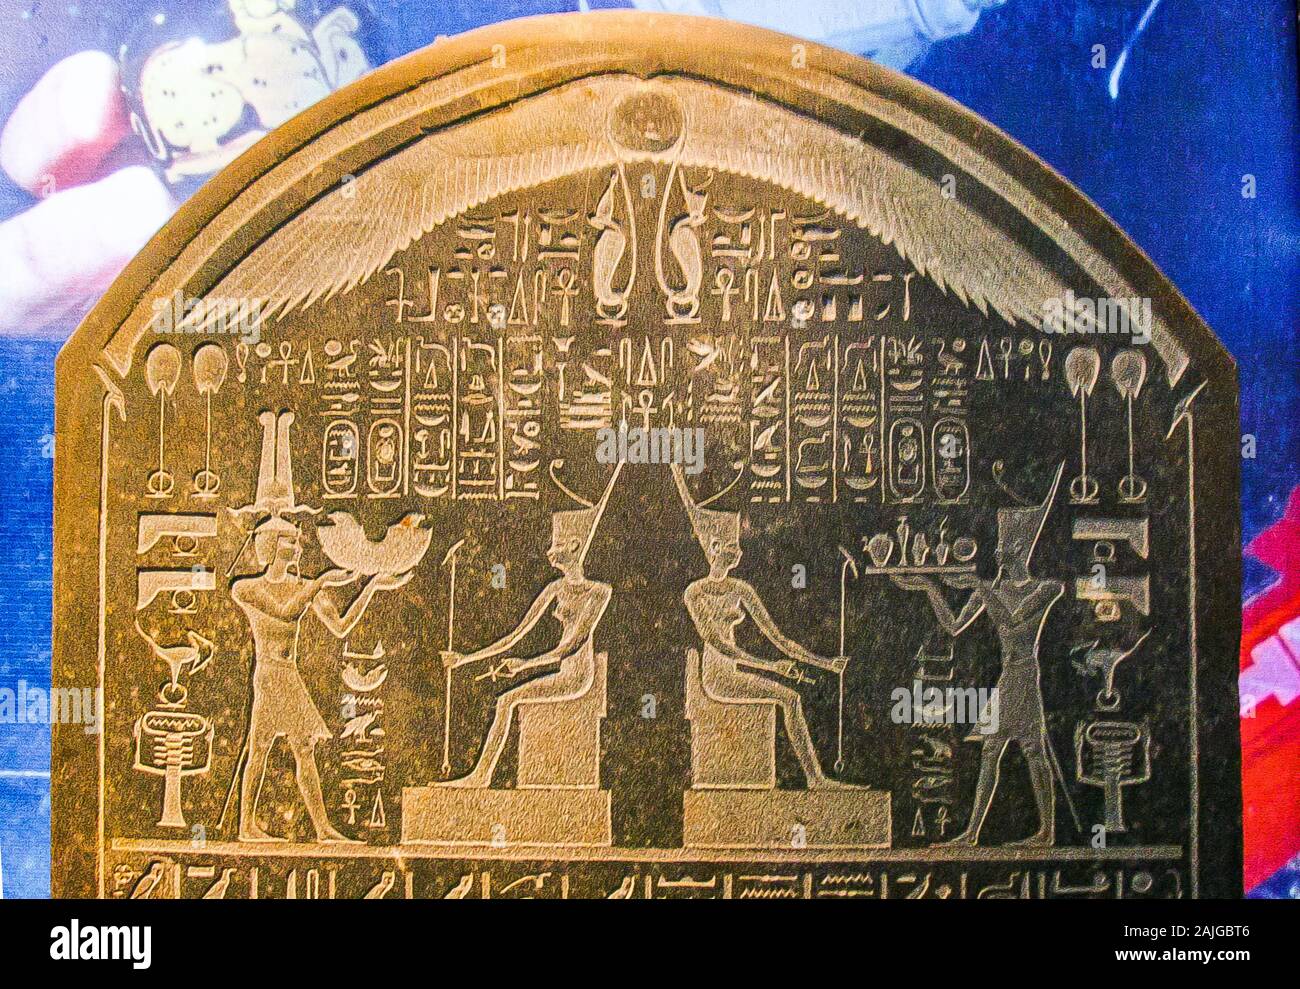 Egypte, Alexandrie, Musée National, vue partielle d'une stèle de Nectanebo I, une copie de la 'Naucratis stela', trouvé dans l'Aboukir par Franck Goddio équipe. Banque D'Images